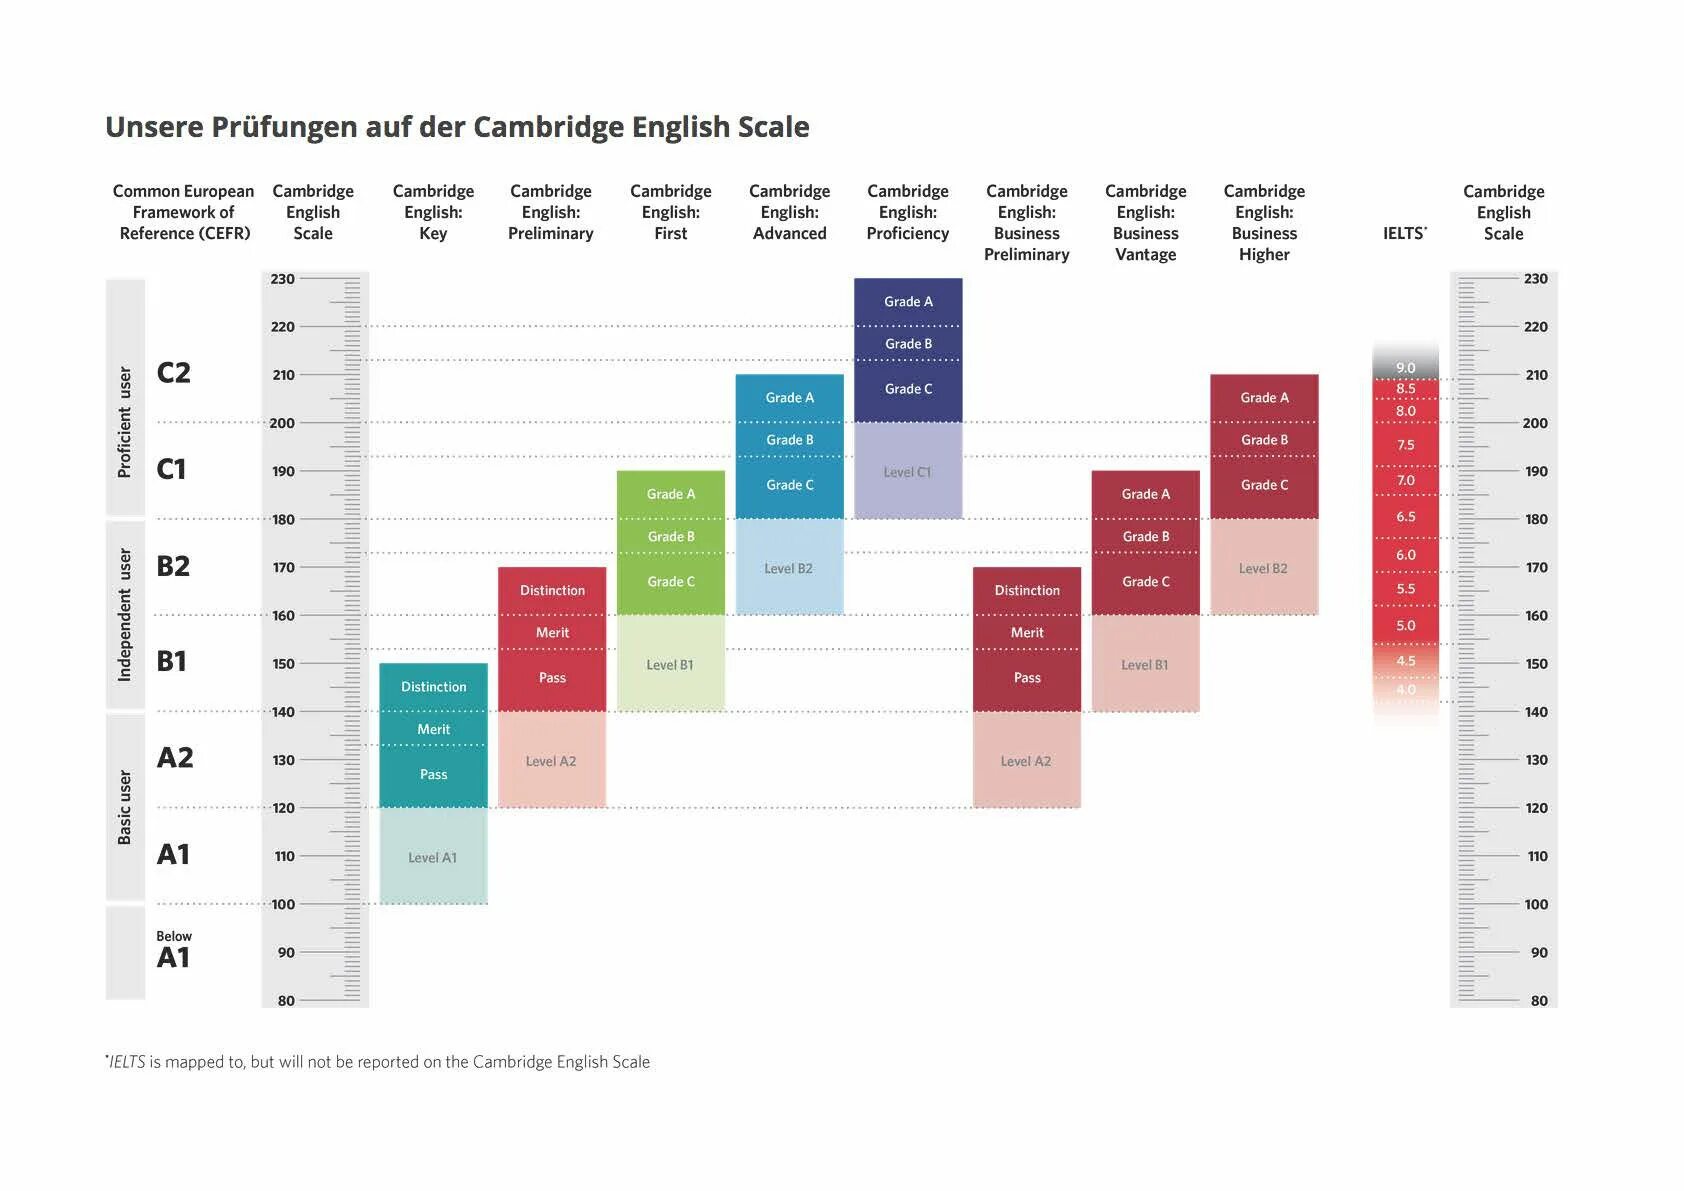 Cambridge english level. Cambridge English уровни. Шкала Cambridge и IELTS. Cambridge English IELTS. Cambridge English Scale.